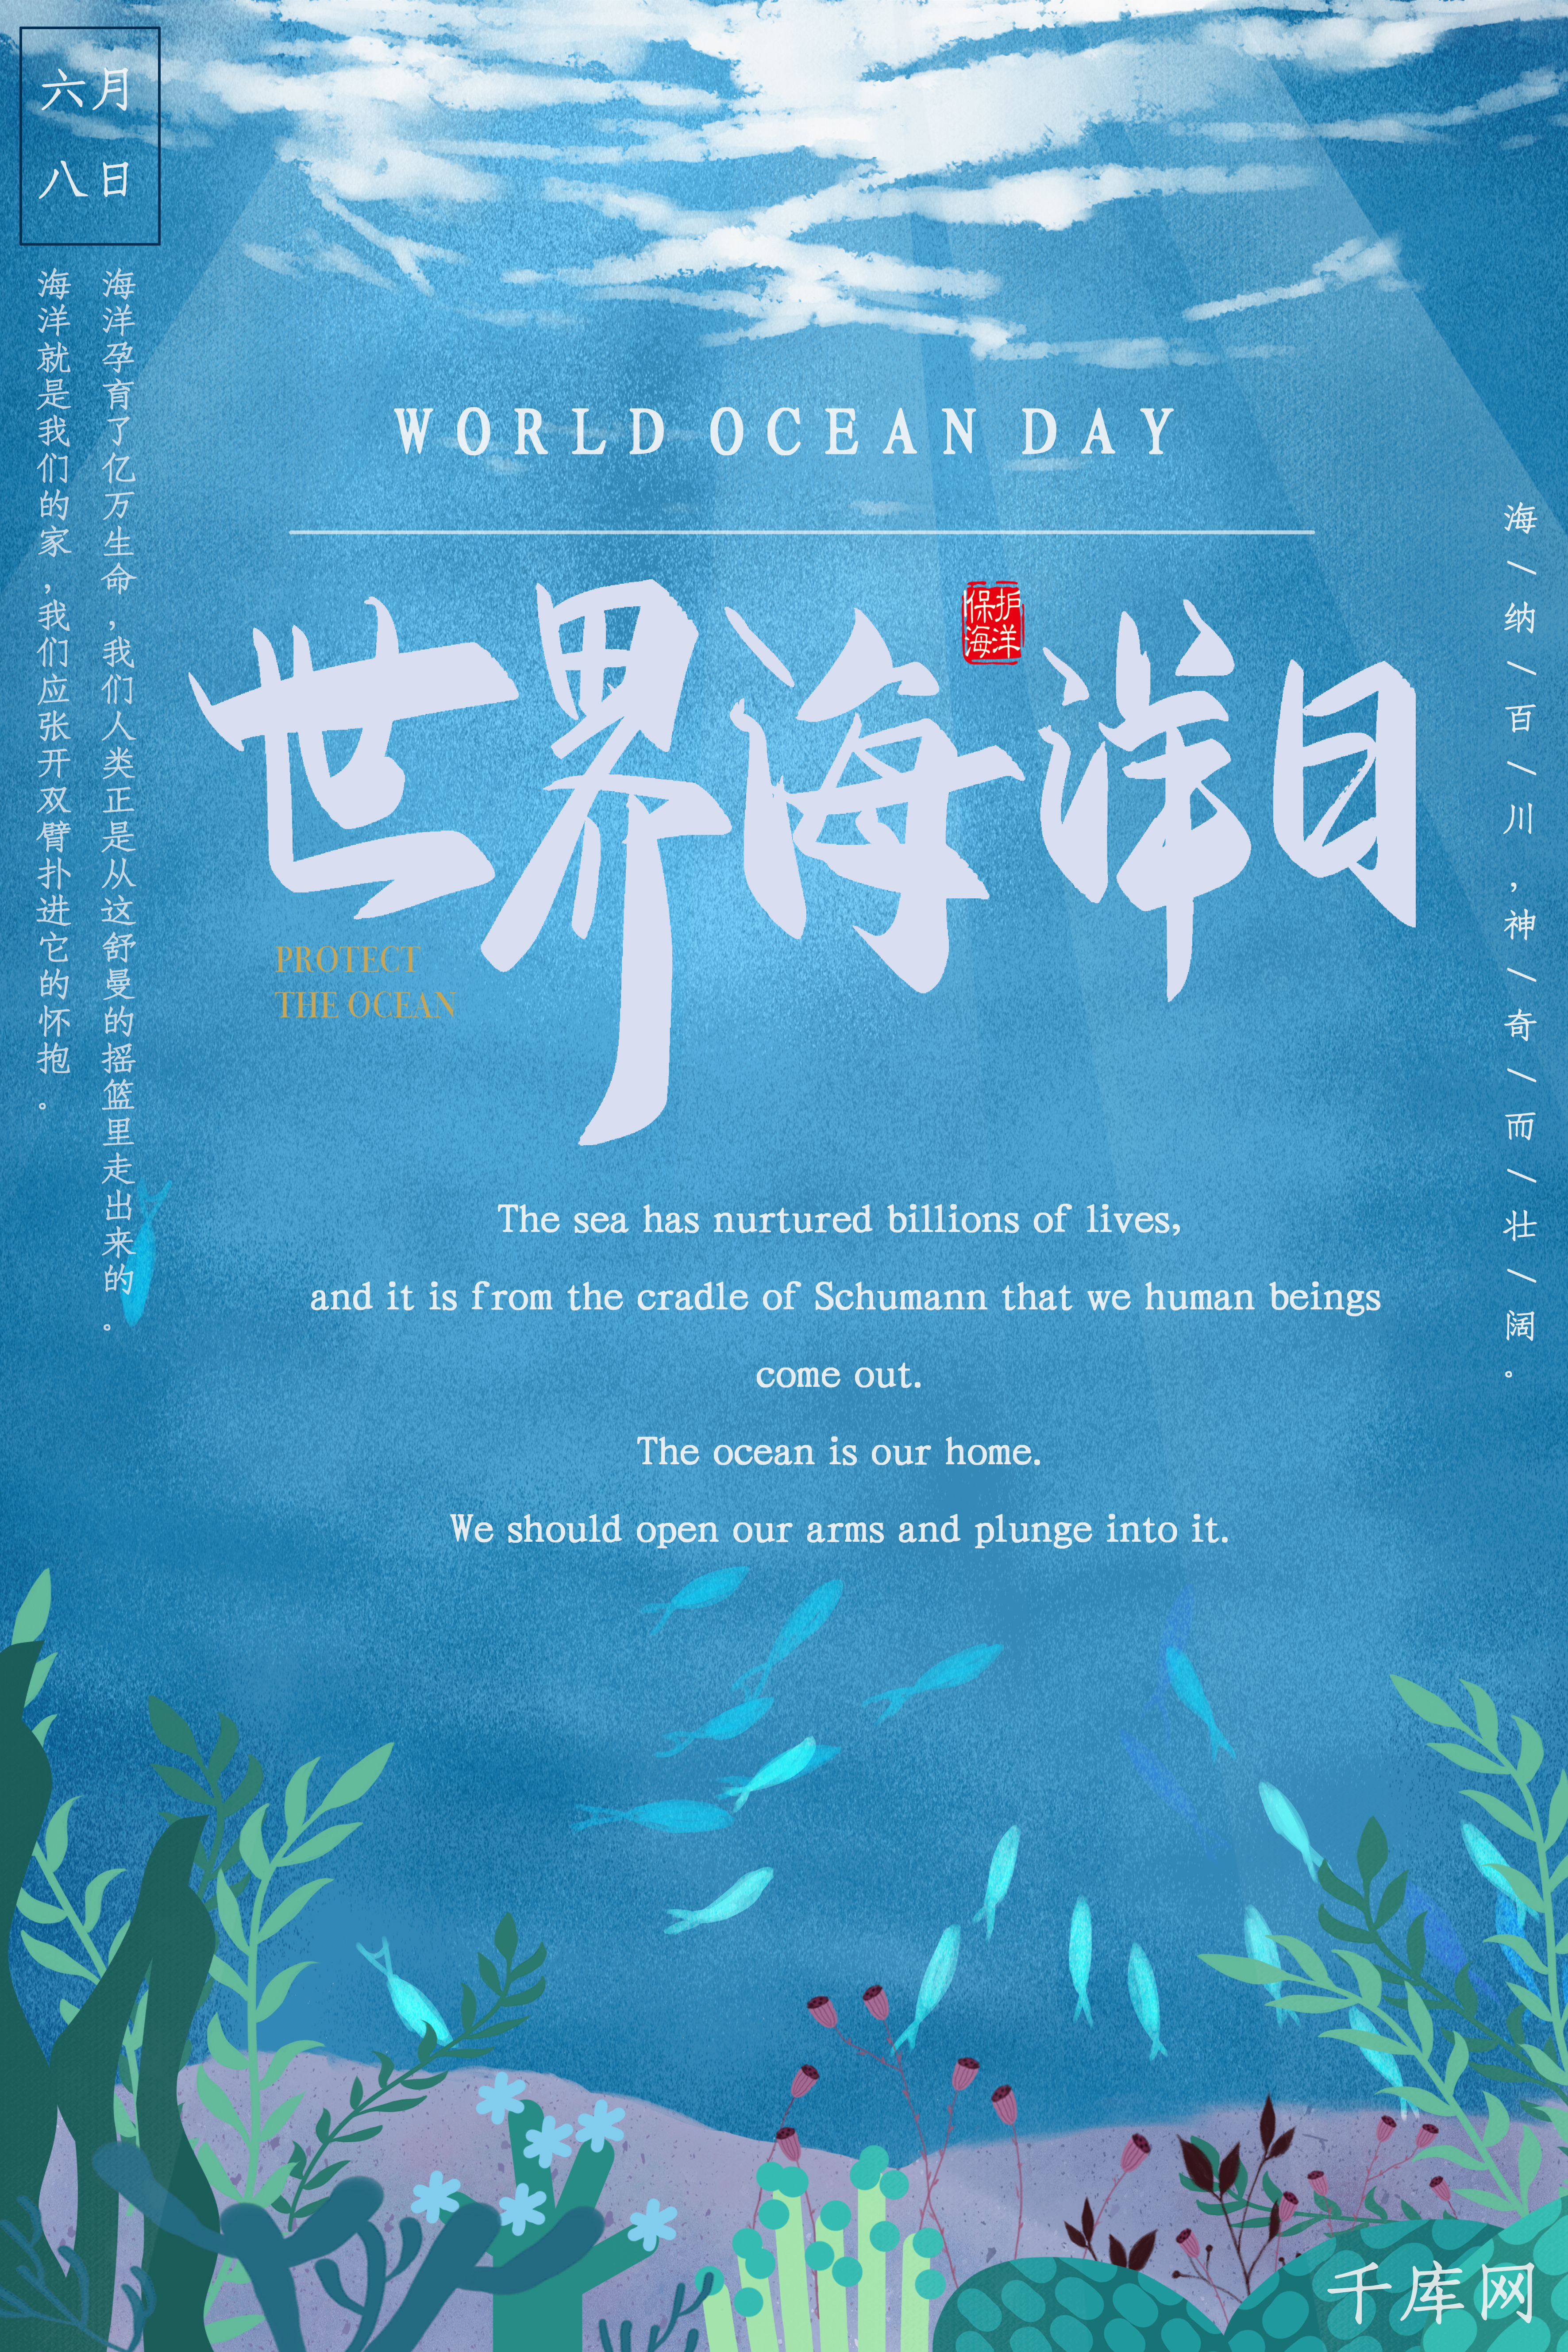 蓝色唯美海底世界海洋日海报图片